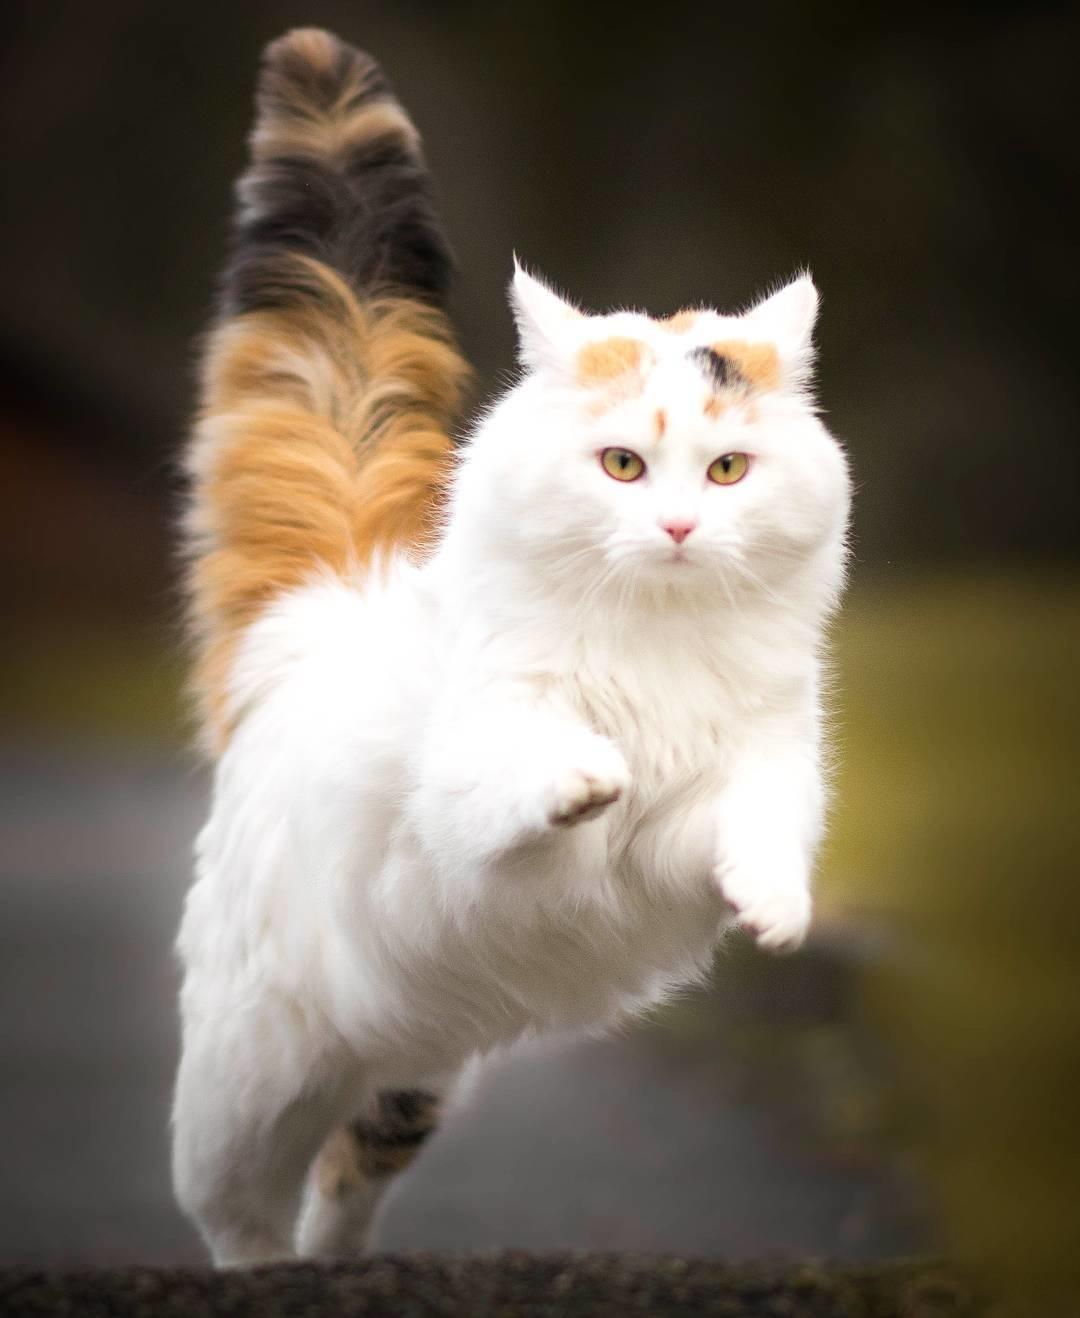 صور قطط كيوت , اجمل القطط المميزه بالصور - عتاب وزعل